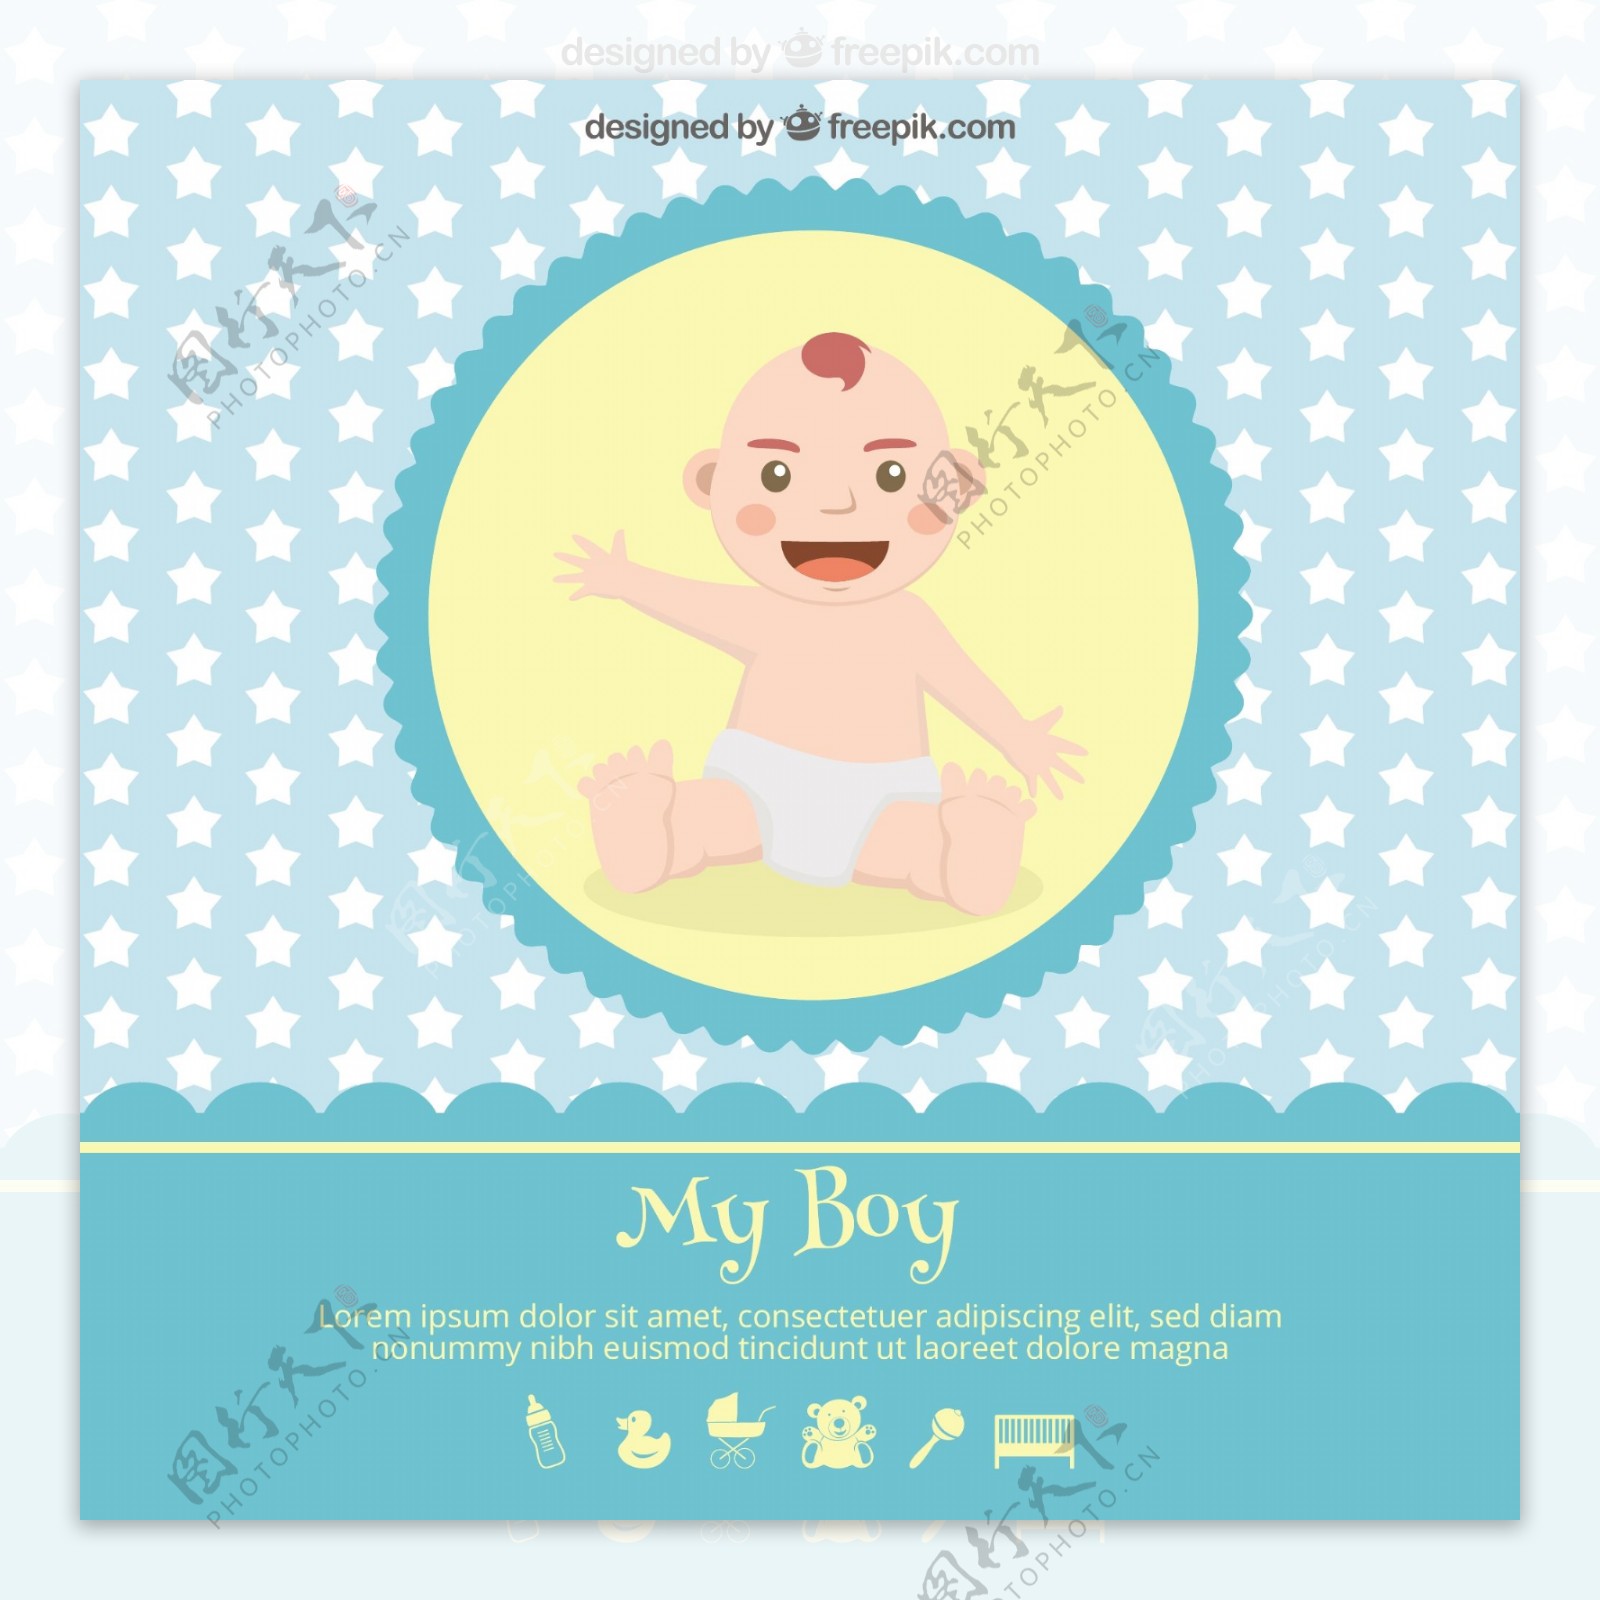 婴儿沐浴卡与婴儿插画